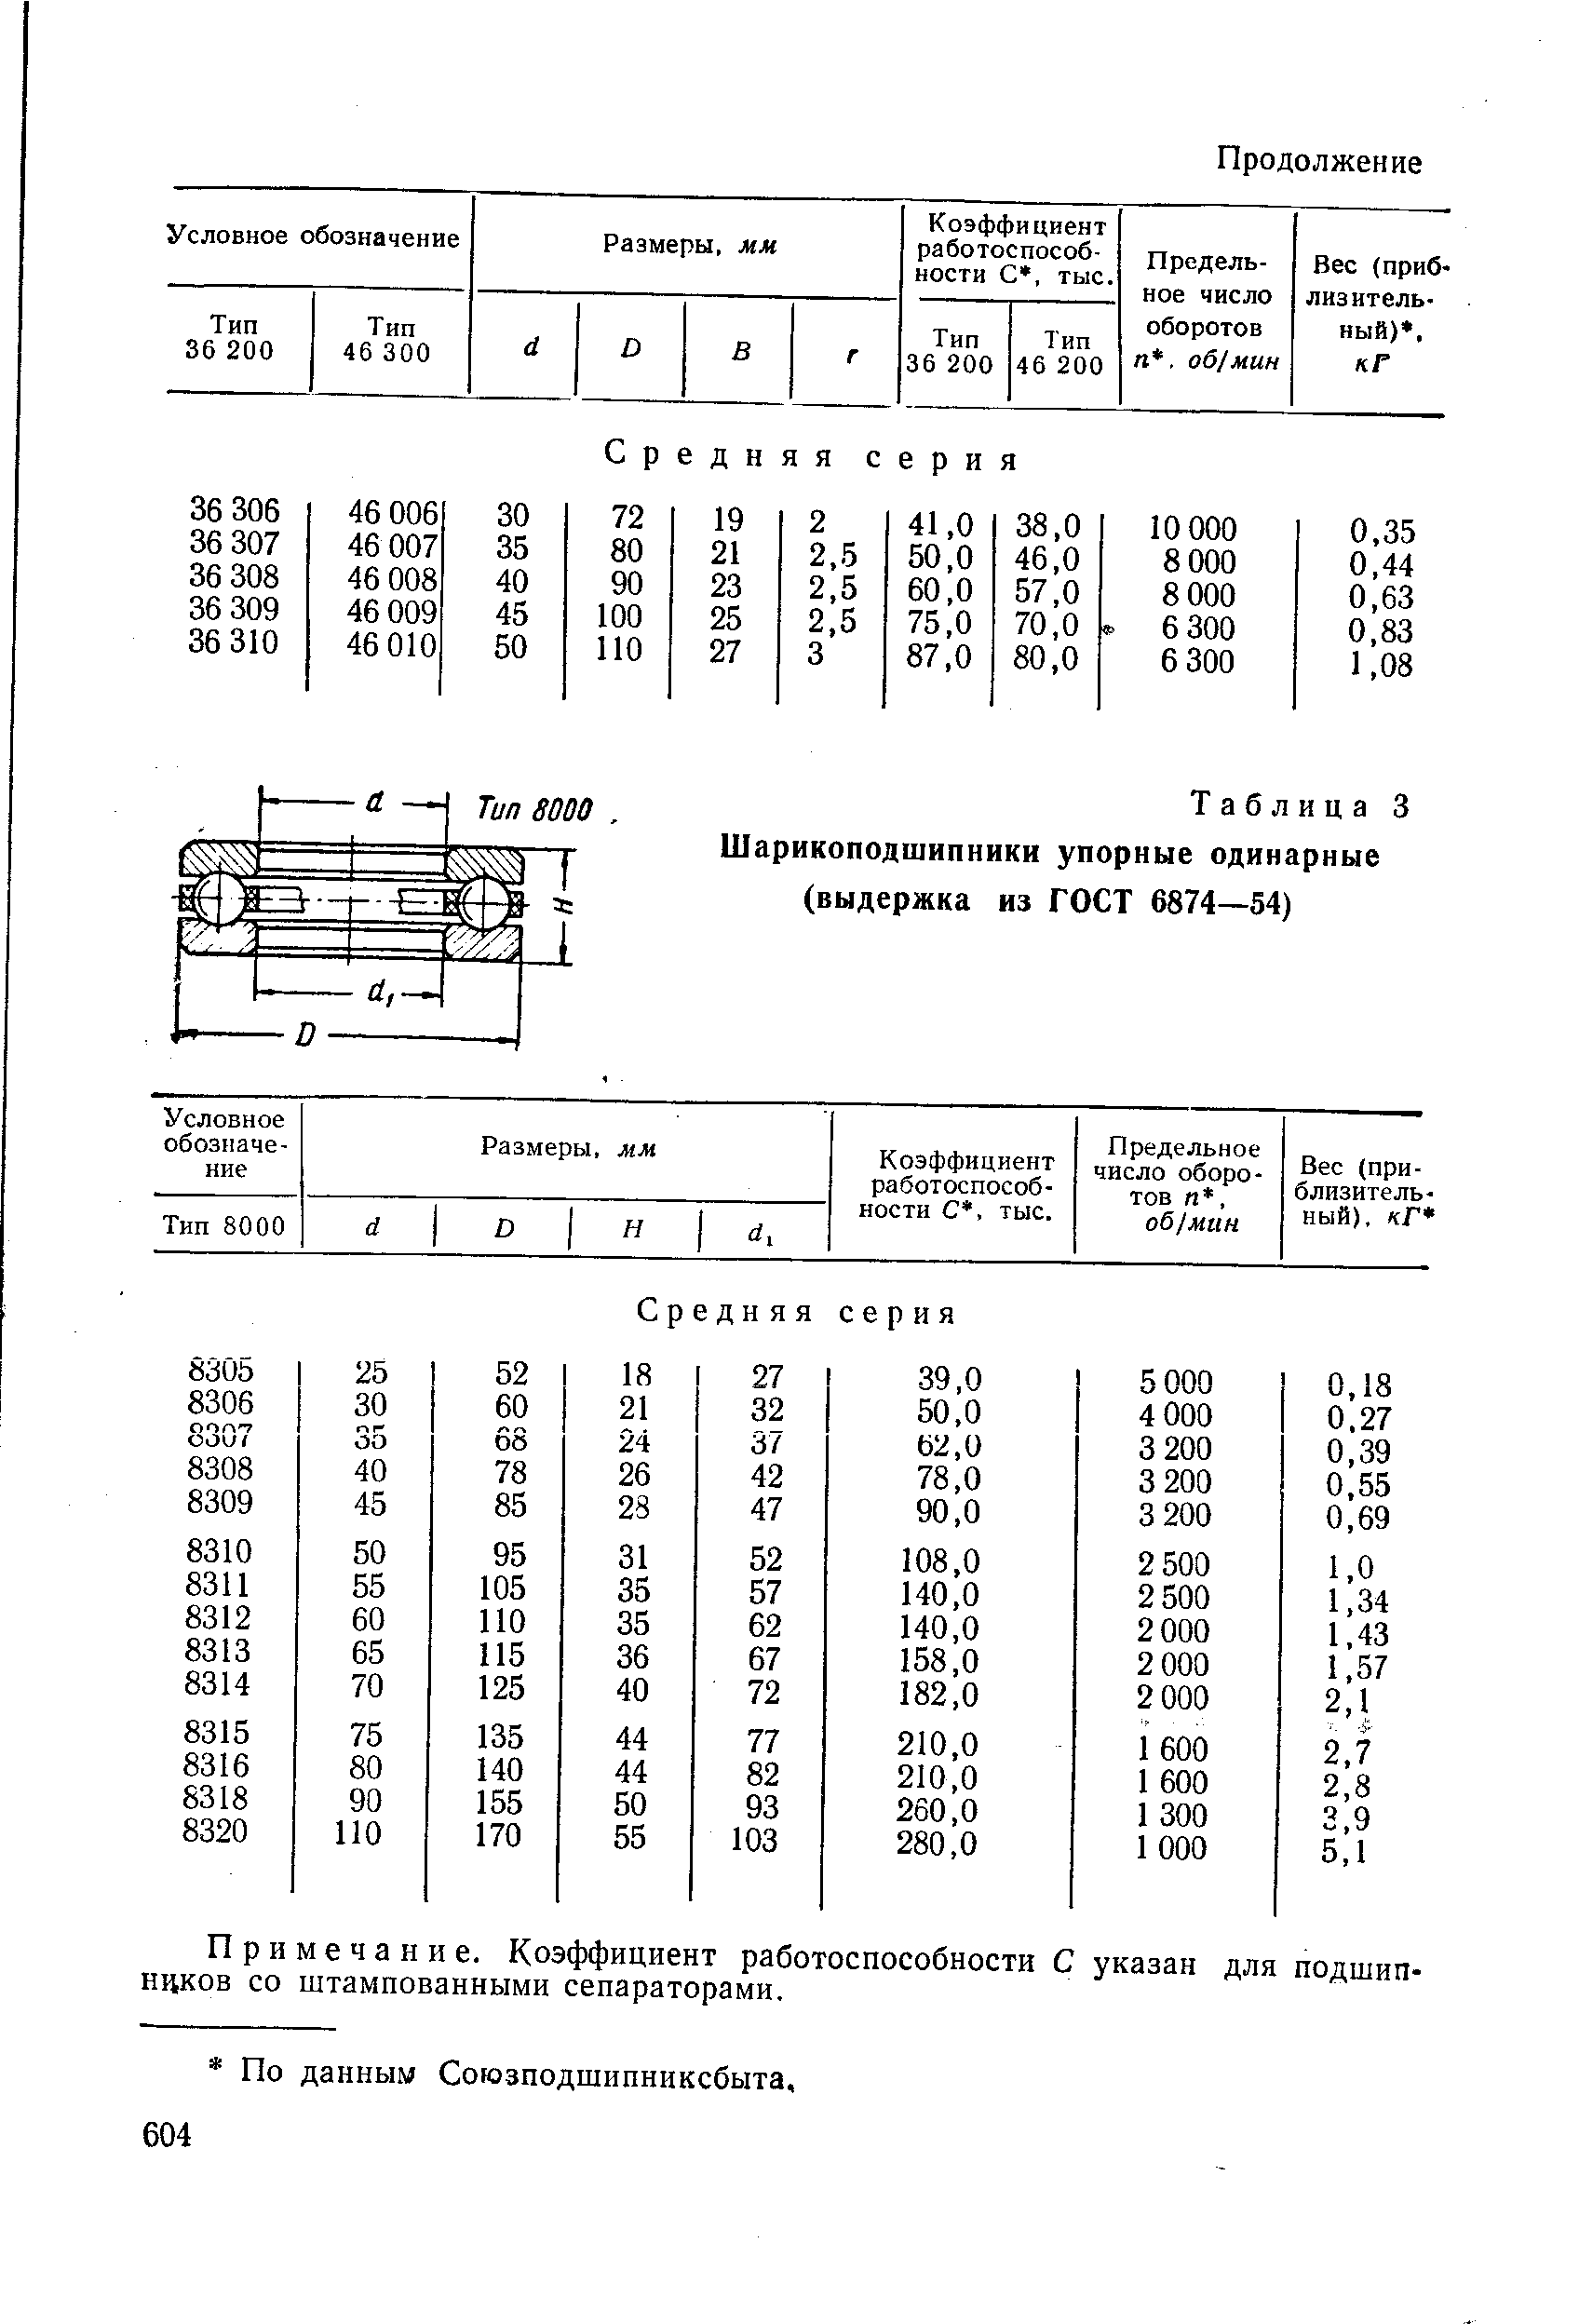 Таблица 3 Шарикоподшипники упорные одинарные (выдержка из ГОСТ 6874—54)
